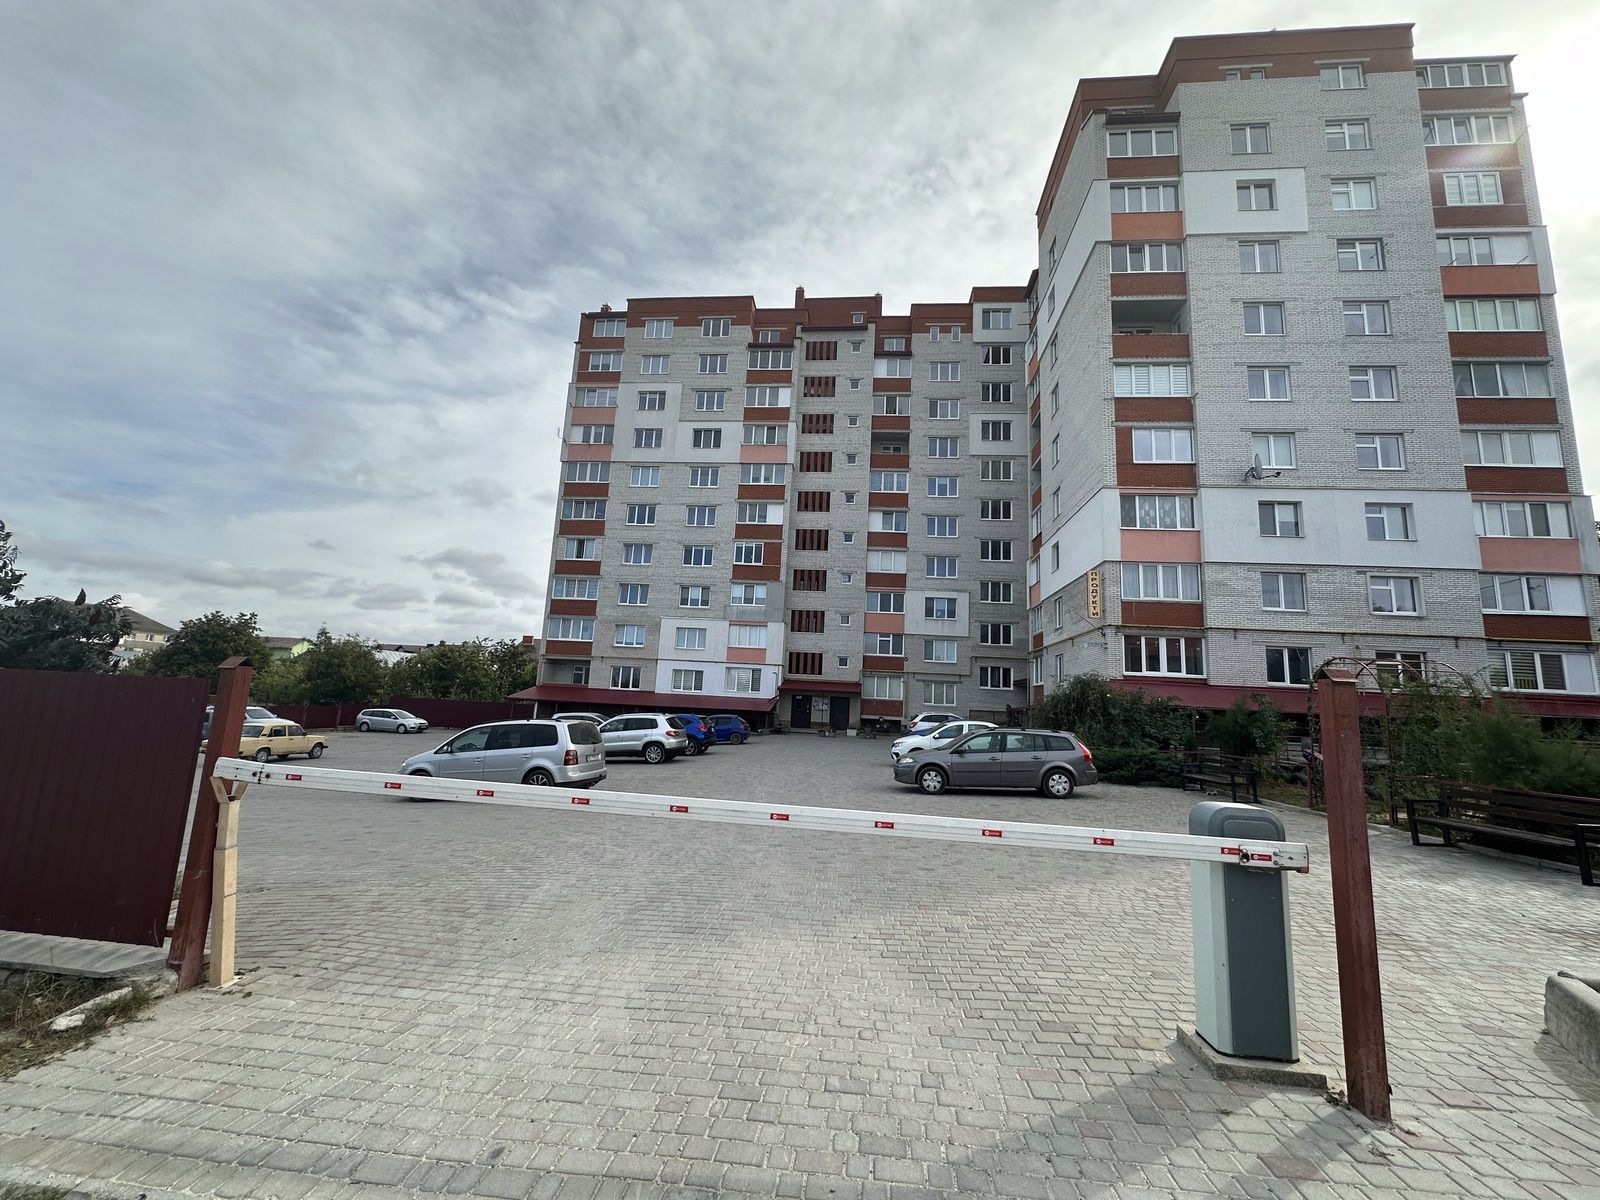 Продаж 1 кімнатної квартири у новобудові по вул.Л.Українки Березовиця